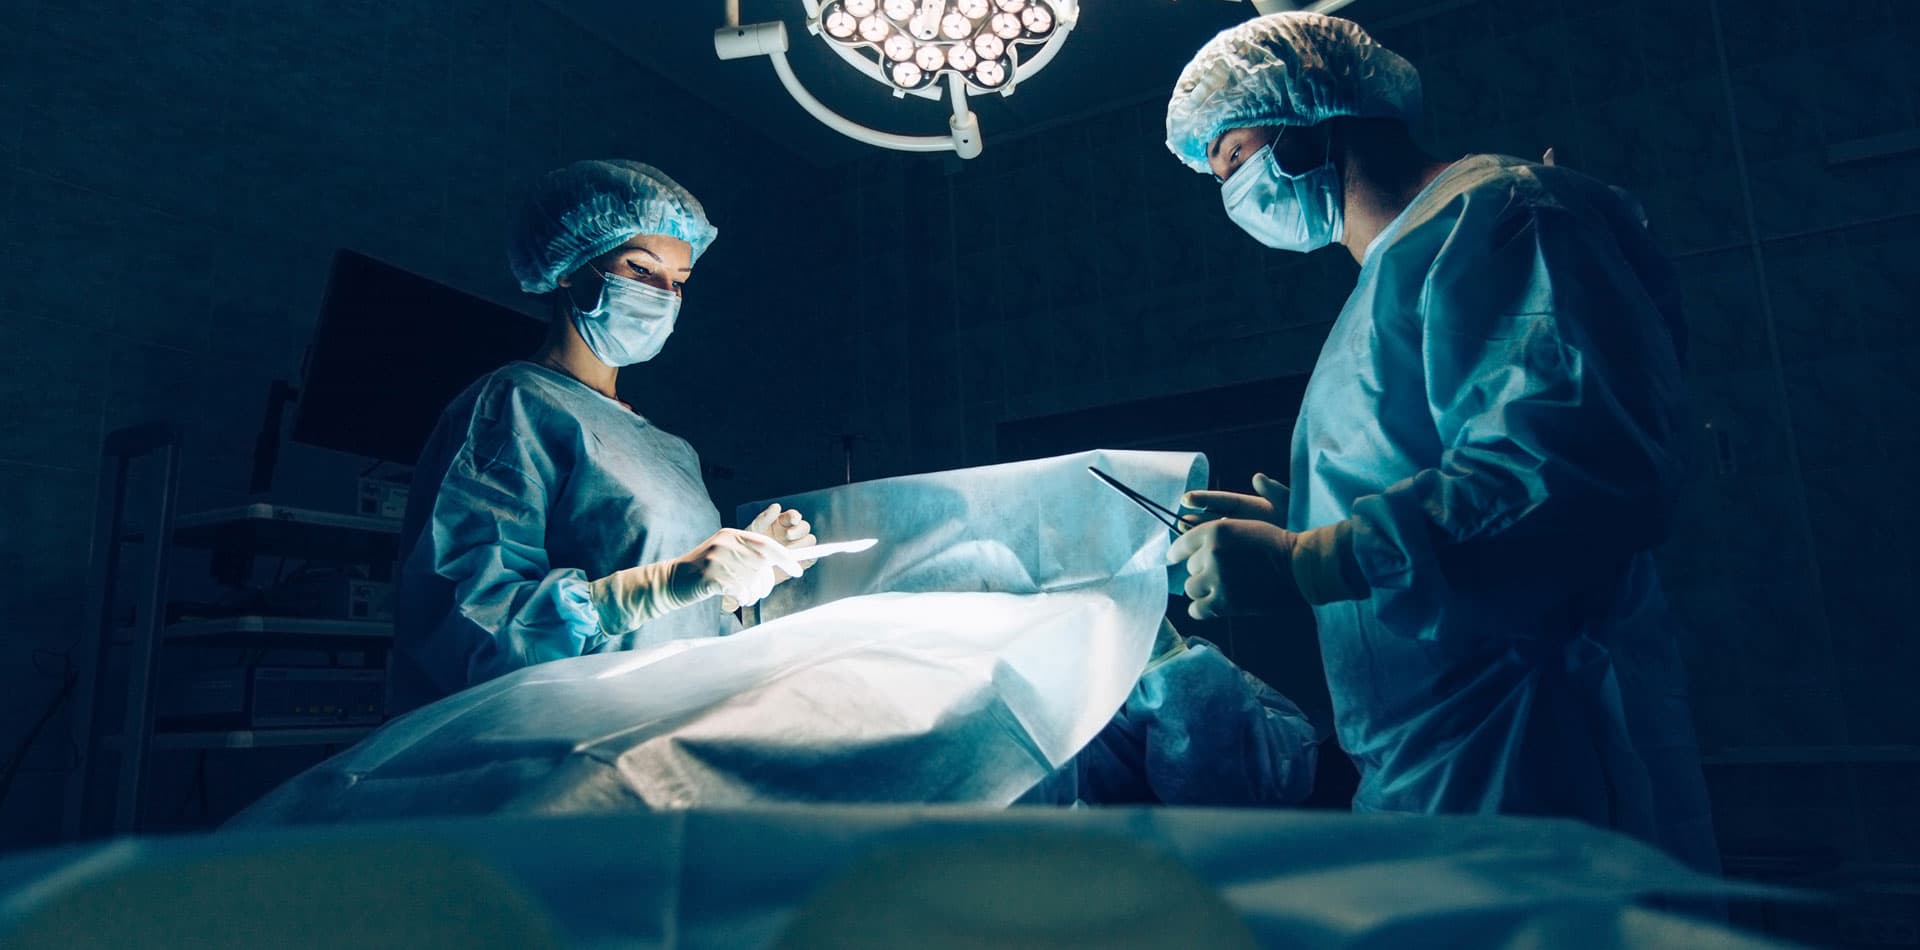 Coloproctología - Cirujano especialista en Ourense y Vigo